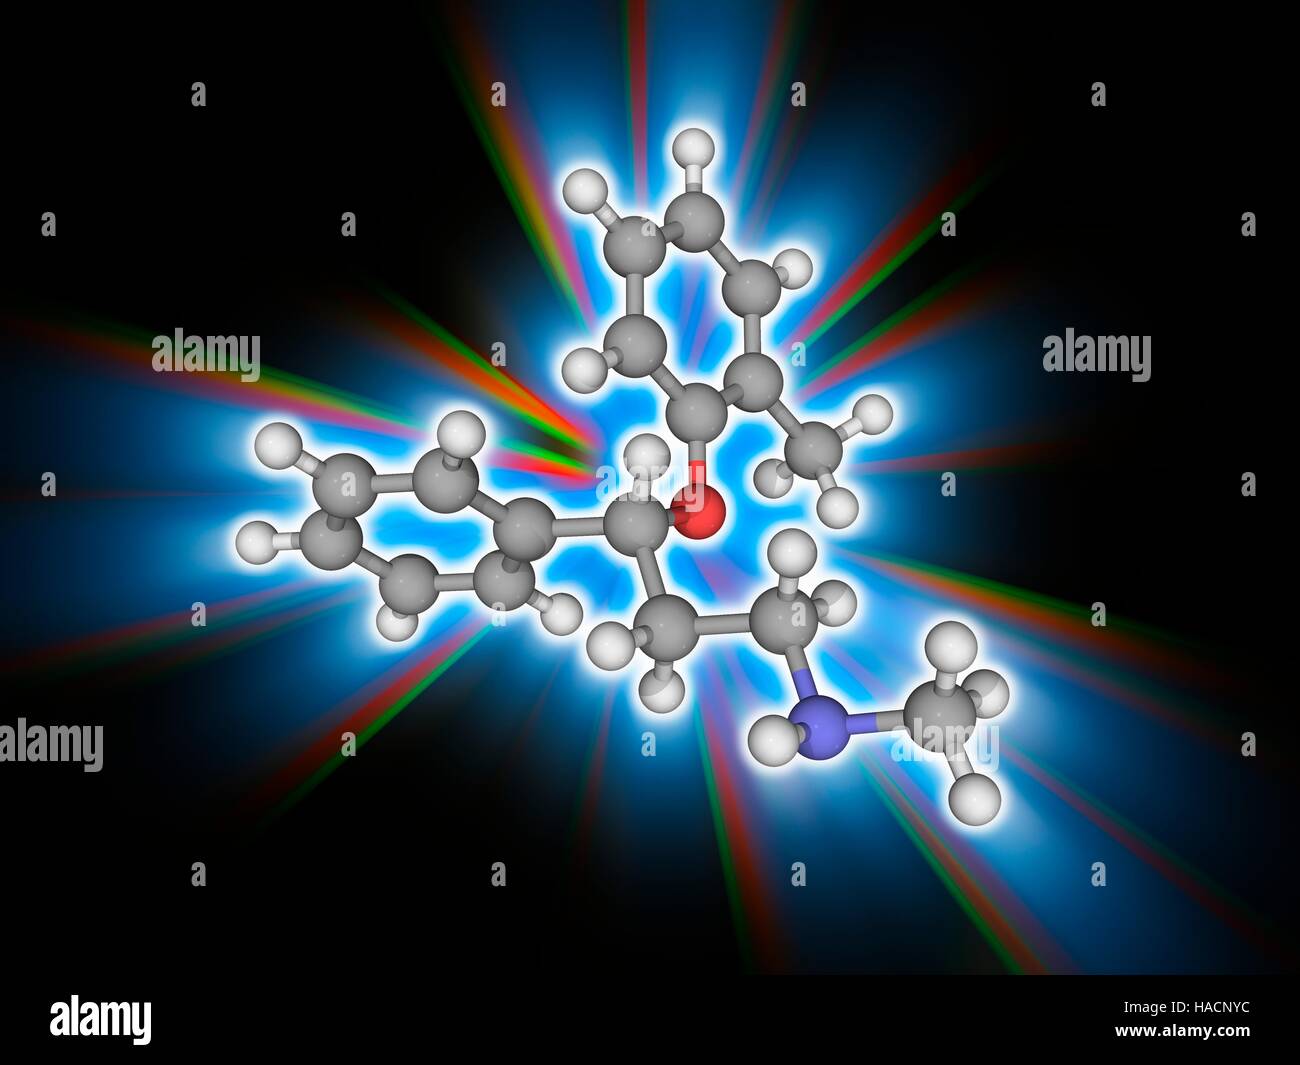 Atomoxetine. Il modello molecolare del farmaco atomoxetine (C17.H21.N.O). Questo farmaco è usato nel trattamento di attenzione ed iperattività (ADHD). Gli atomi sono rappresentati da sfere e sono codificati a colori: carbonio (grigio), Idrogeno (bianco), Azoto (blu) e ossigeno (rosso). Illustrazione. Foto Stock